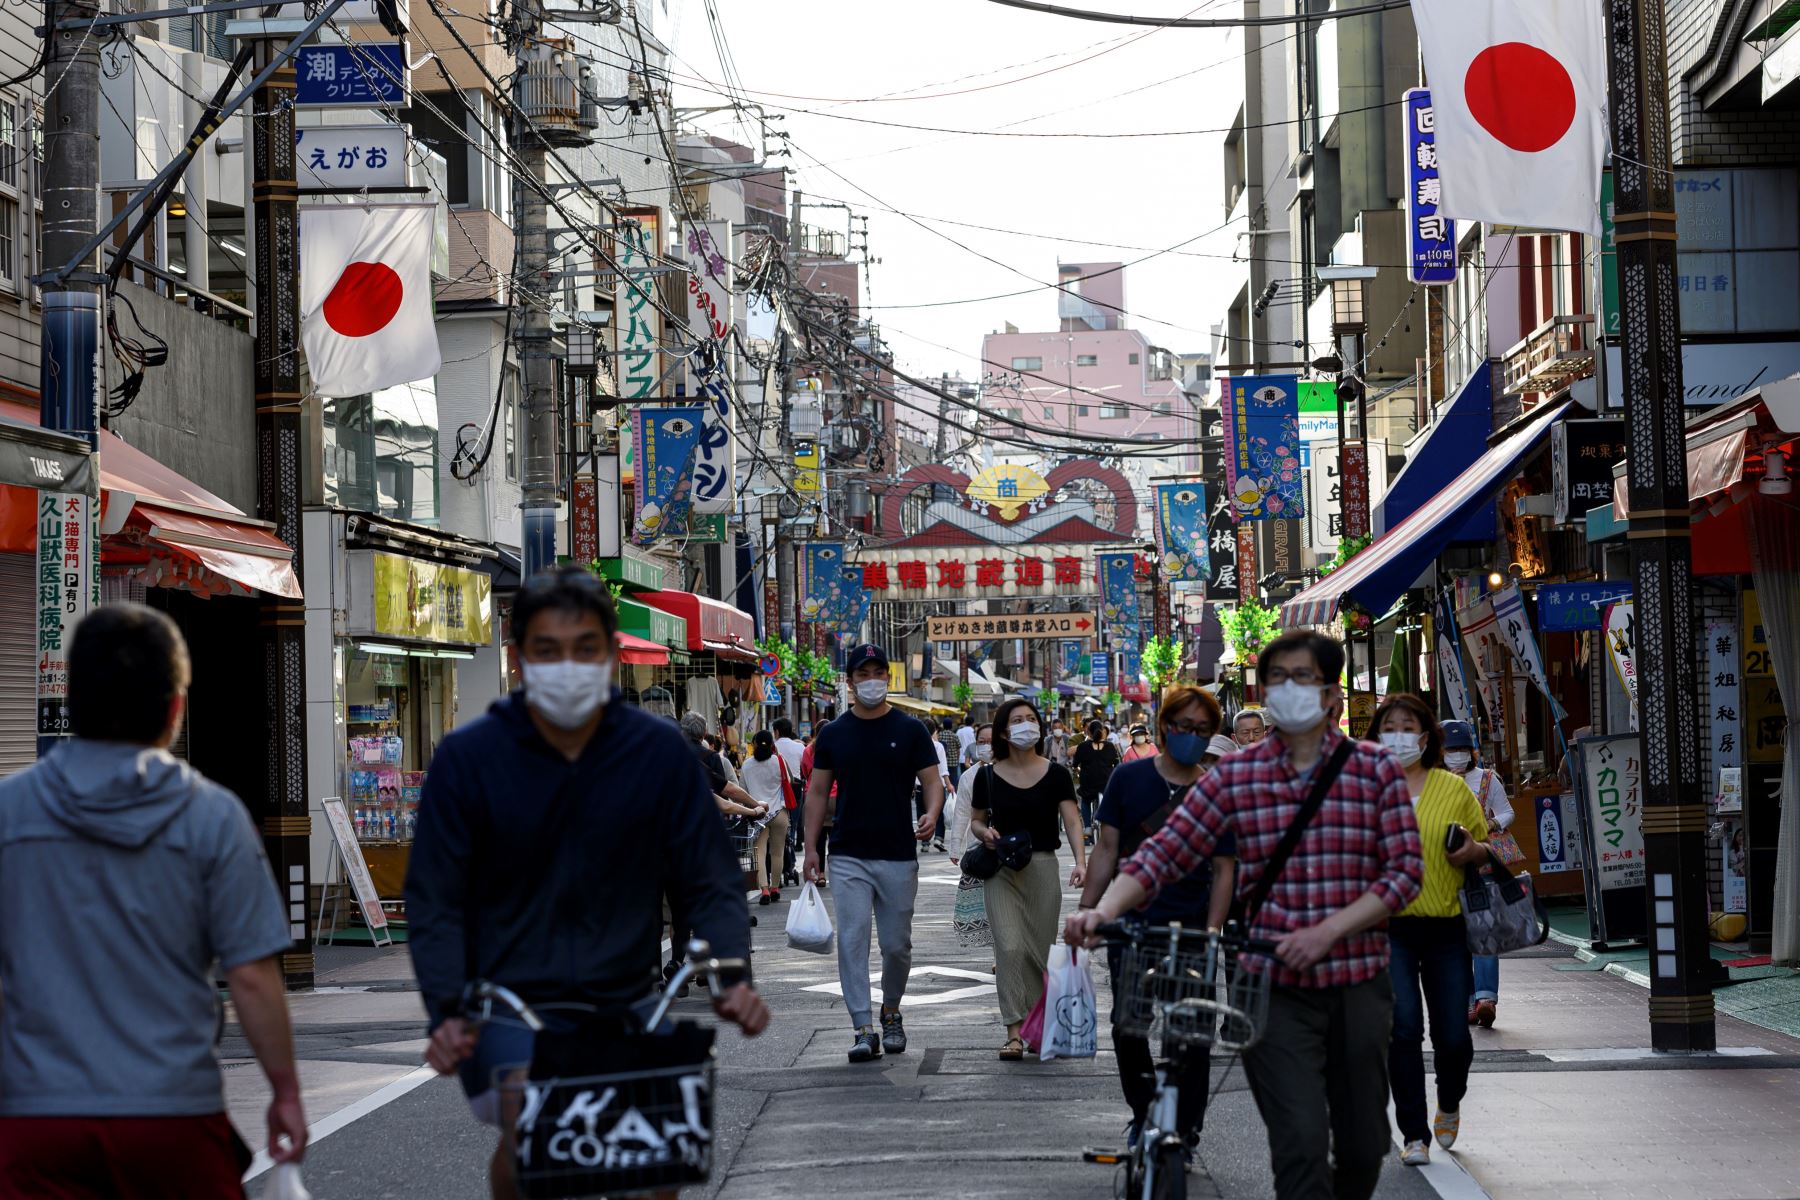 Las personas con máscaras faciales en medio de la preocupación por la propagación del coronavirus (COVID-19) caminan en el distrito de Sugamo de Tokio. Foto: AFP